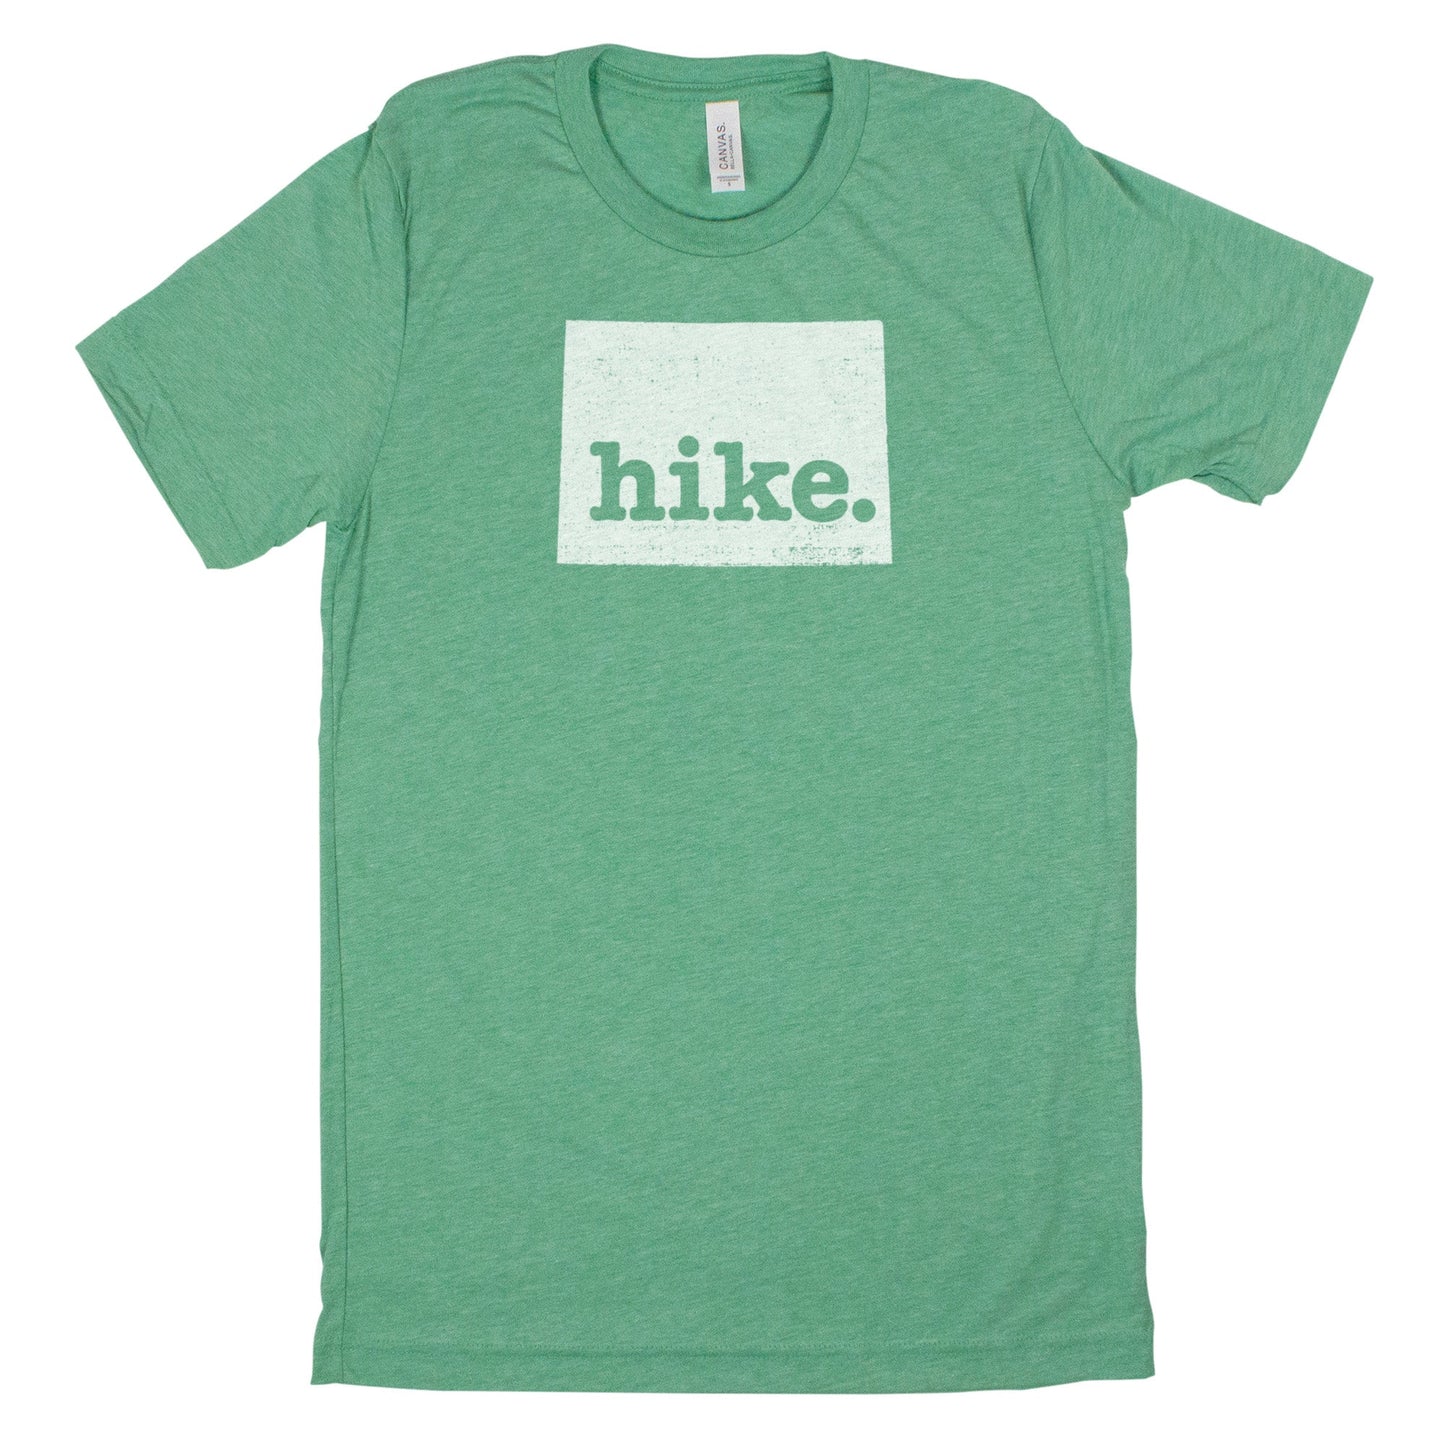 hike. Men's Unisex T-Shirt - Wyoming